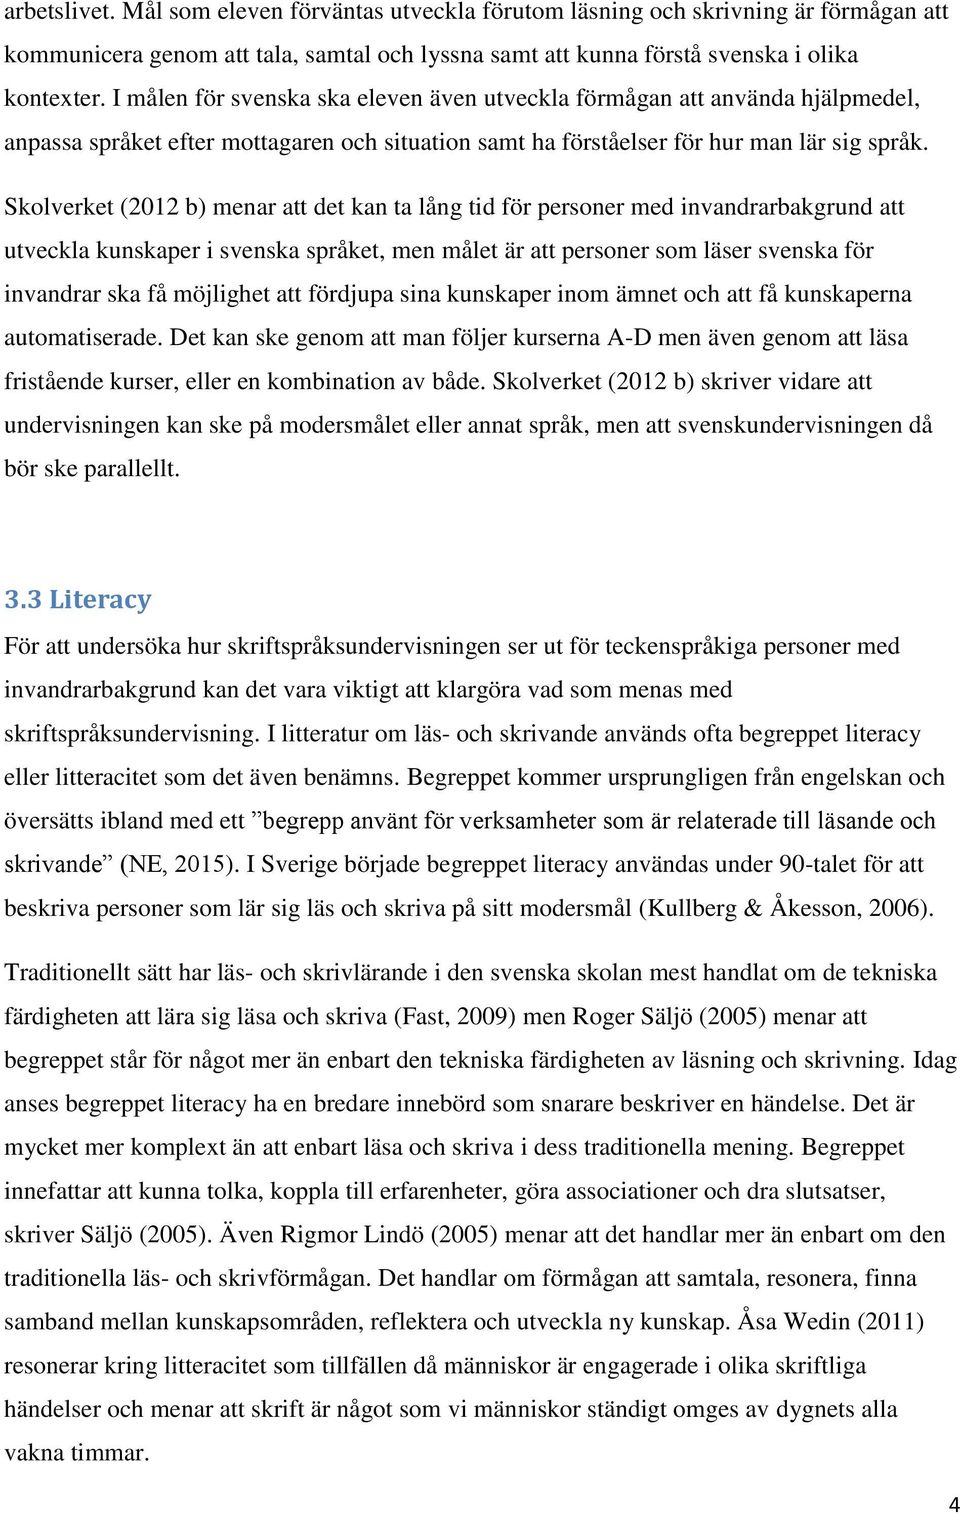 Skolverket (2012 b) menar att det kan ta lång tid för personer med invandrarbakgrund att utveckla kunskaper i svenska språket, men målet är att personer som läser svenska för invandrar ska få